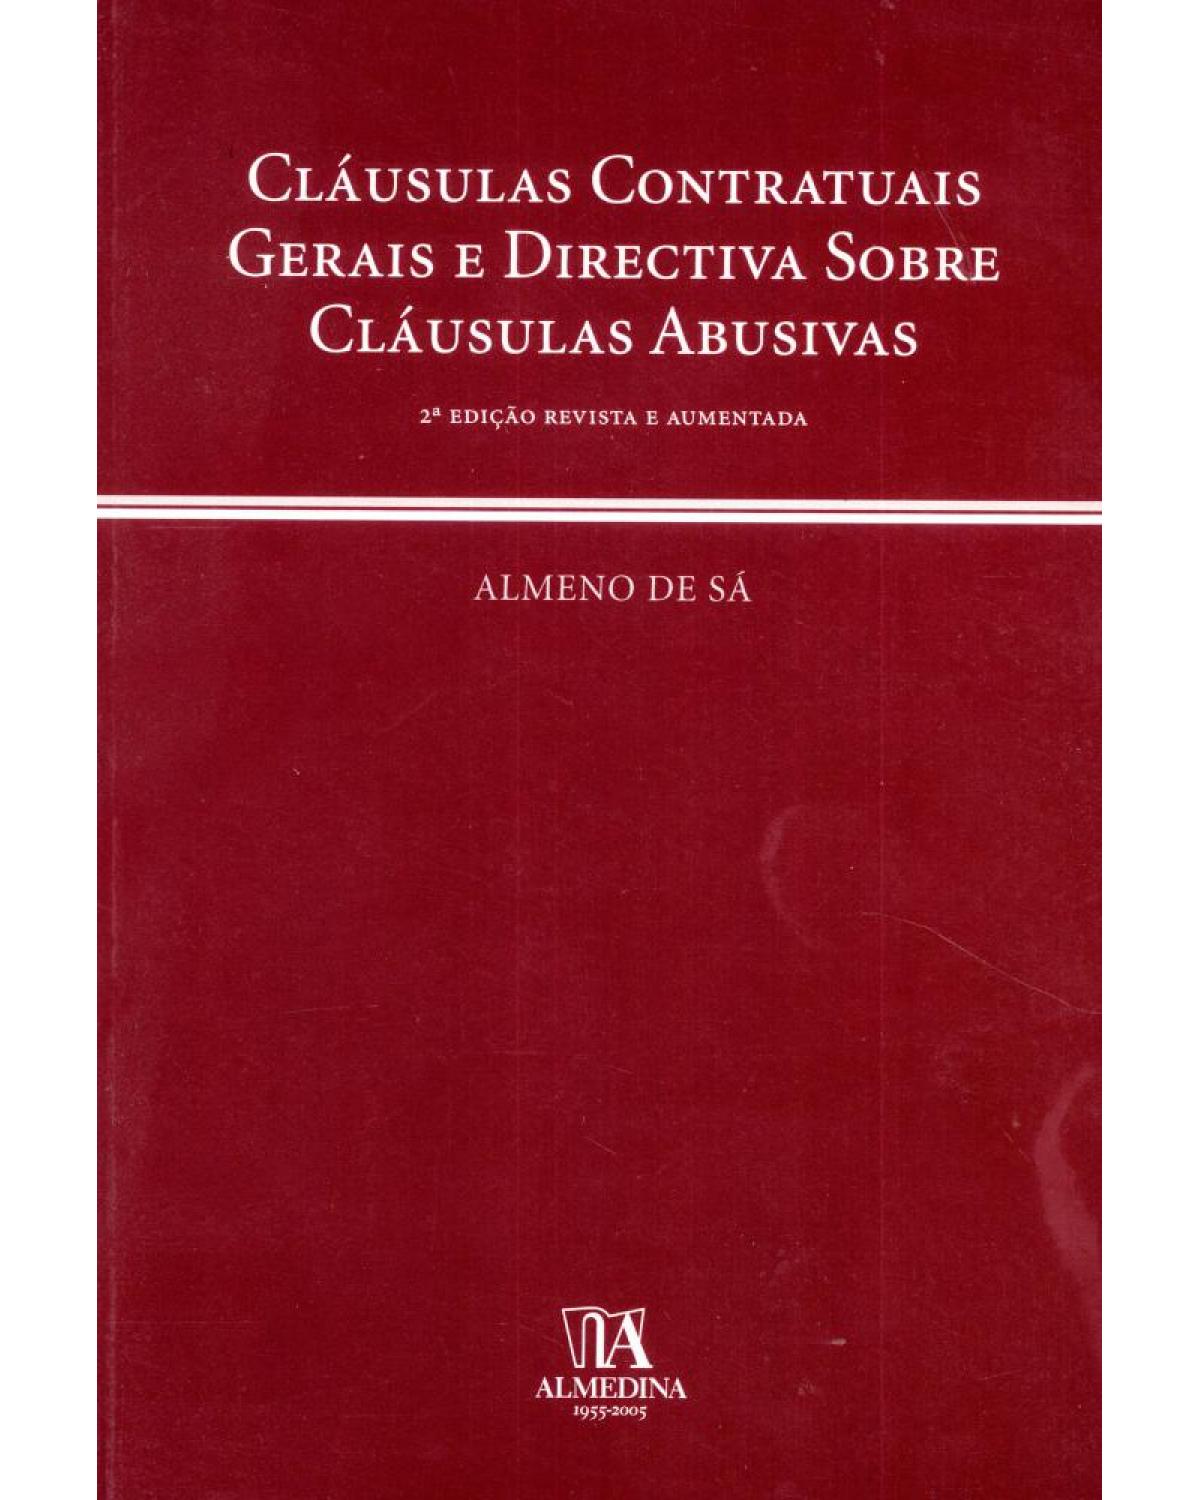 Cláusulas contratuais gerais e directiva sobre cláusulas abusivas - 2ª Edição | 2005